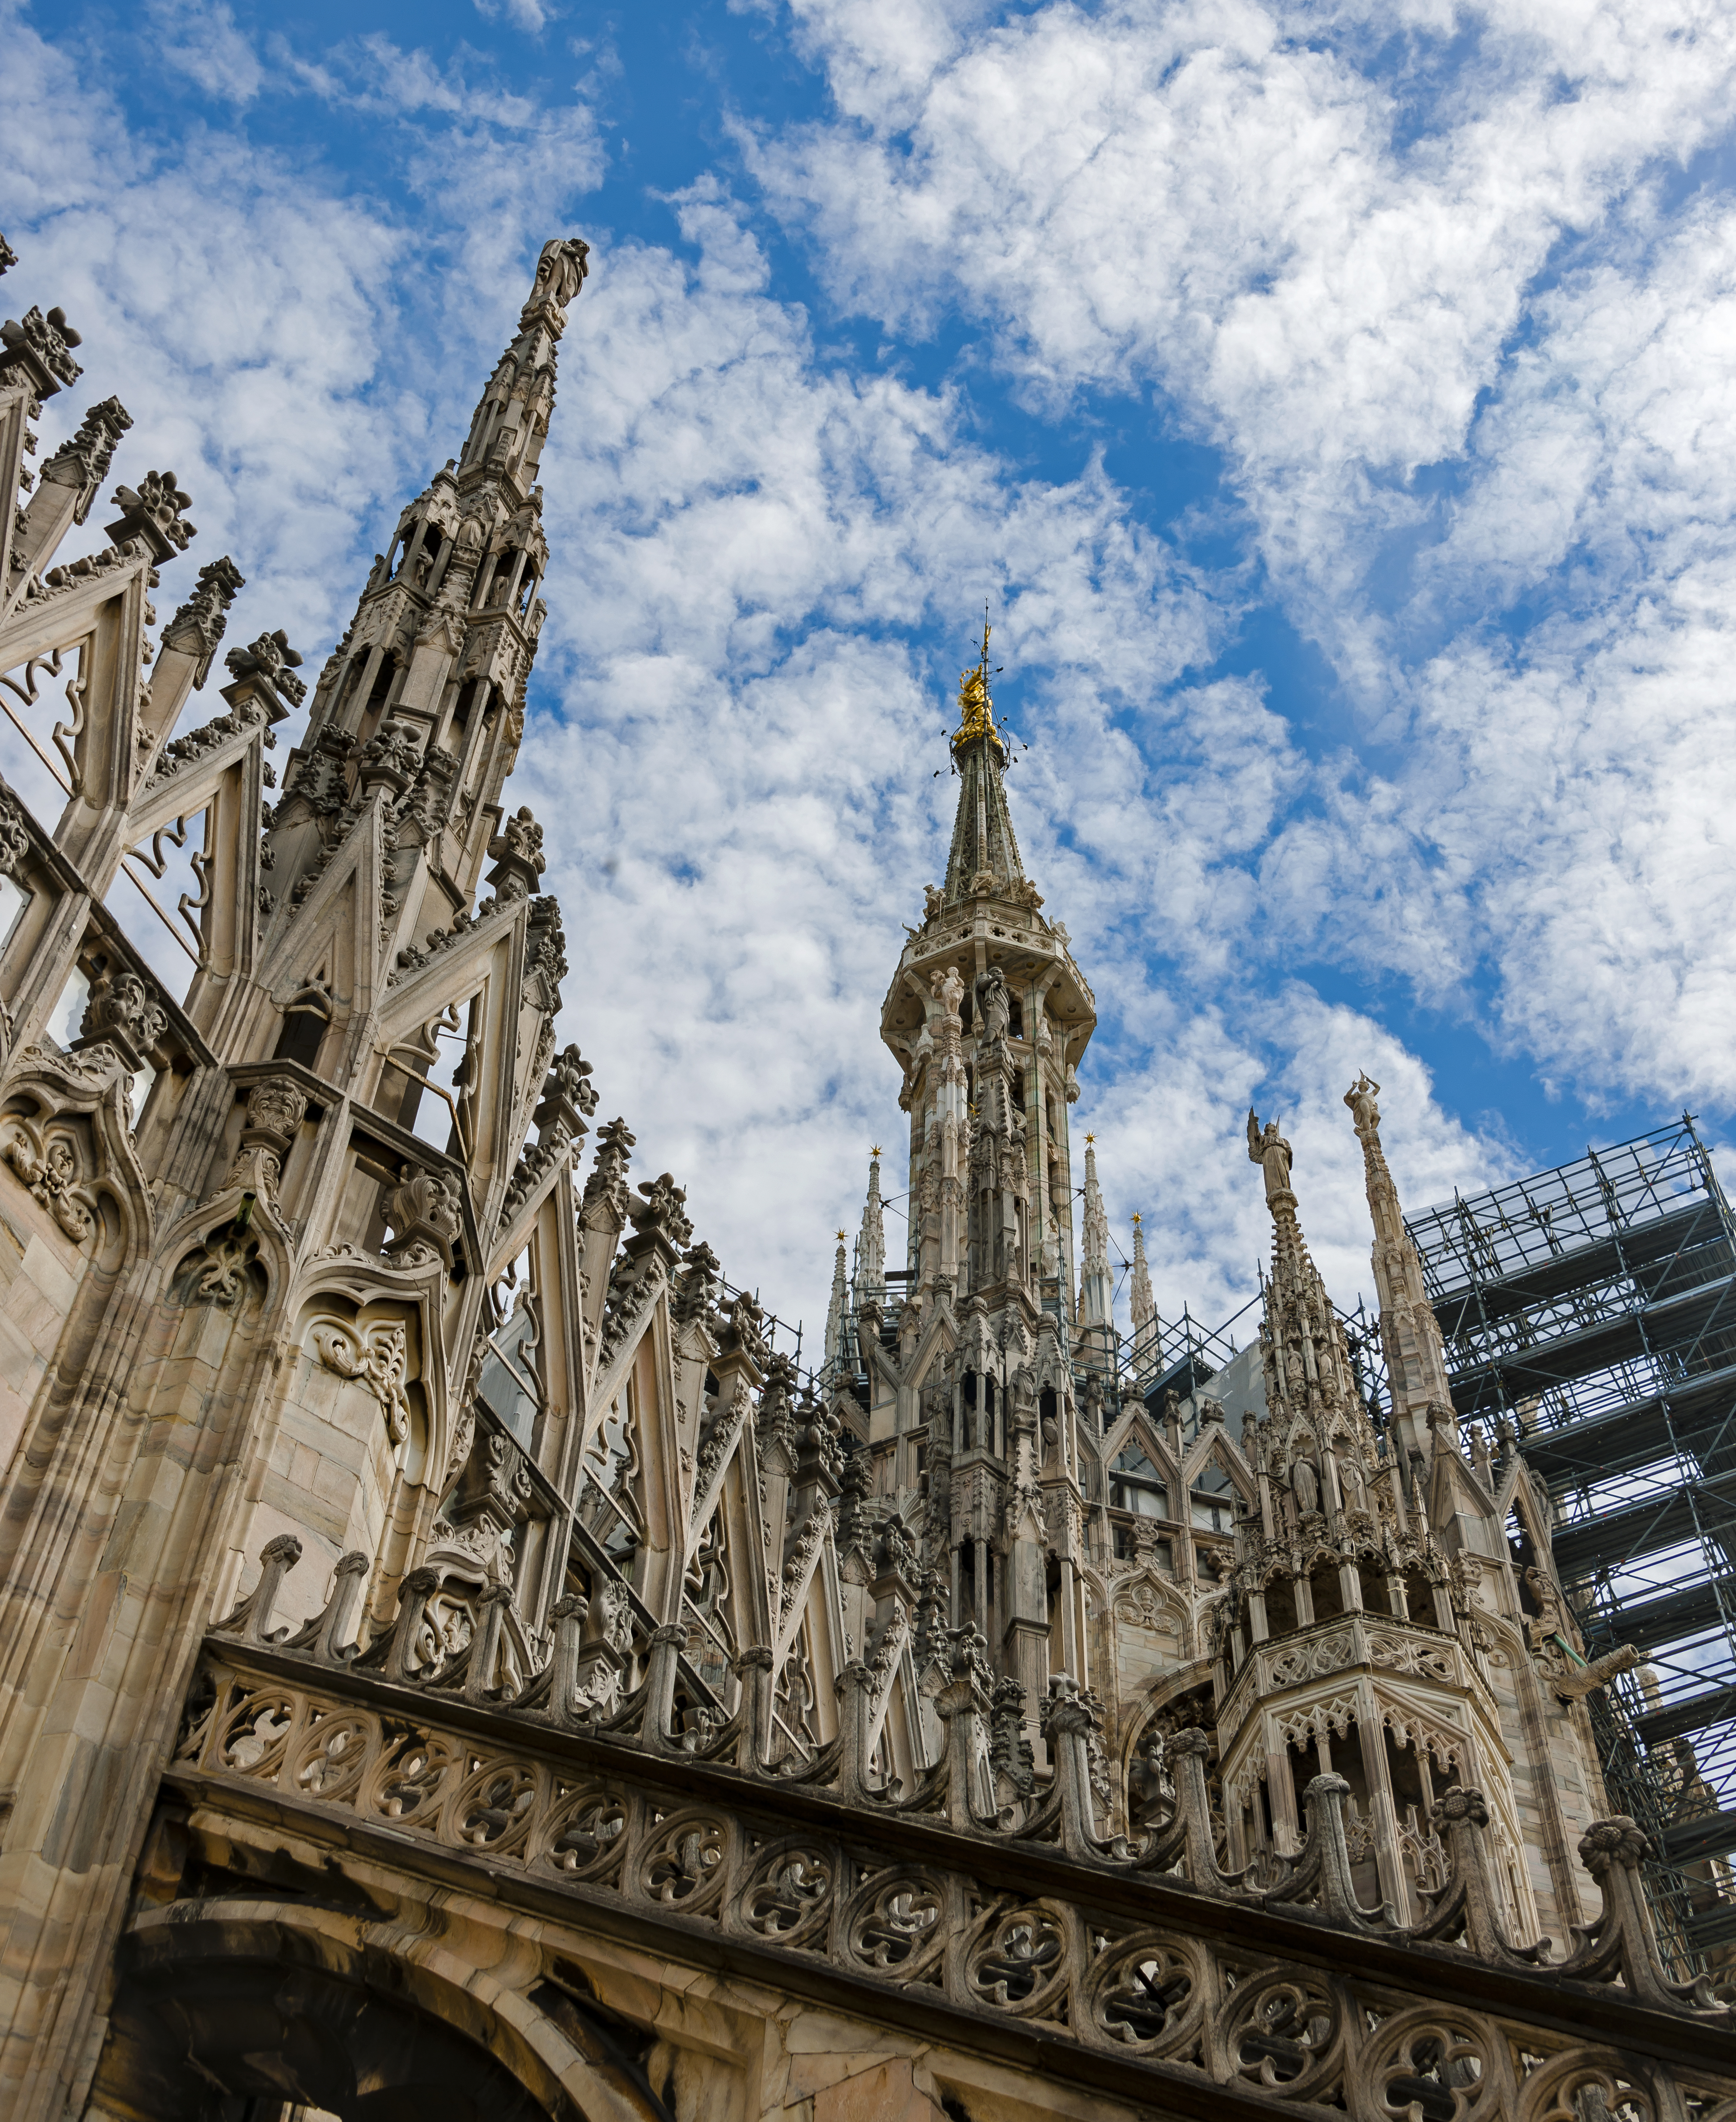 Looking up at Duomo spires, Milan